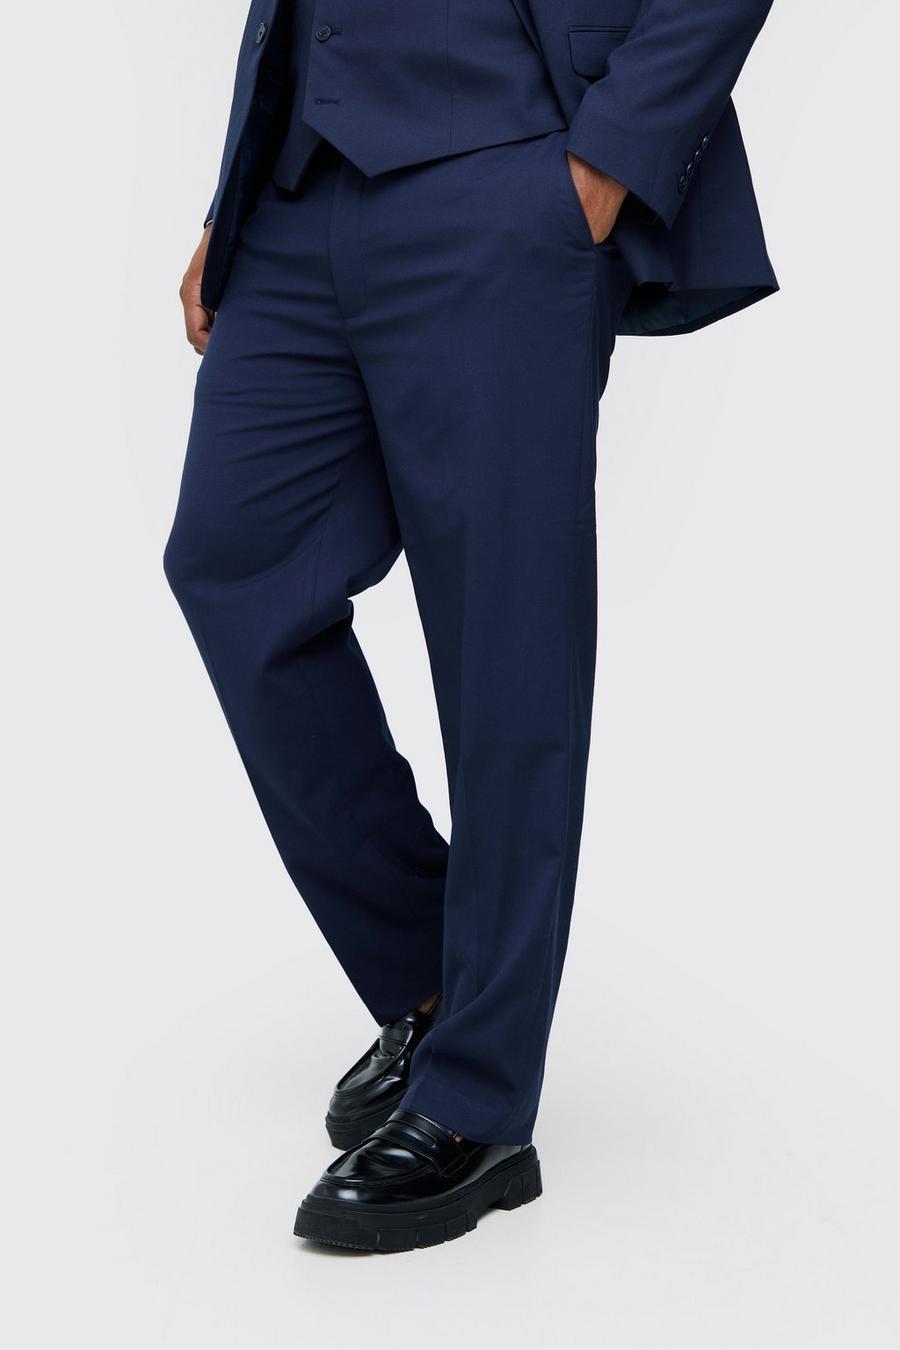 Grande taille - Pantalon de costume droit, Navy